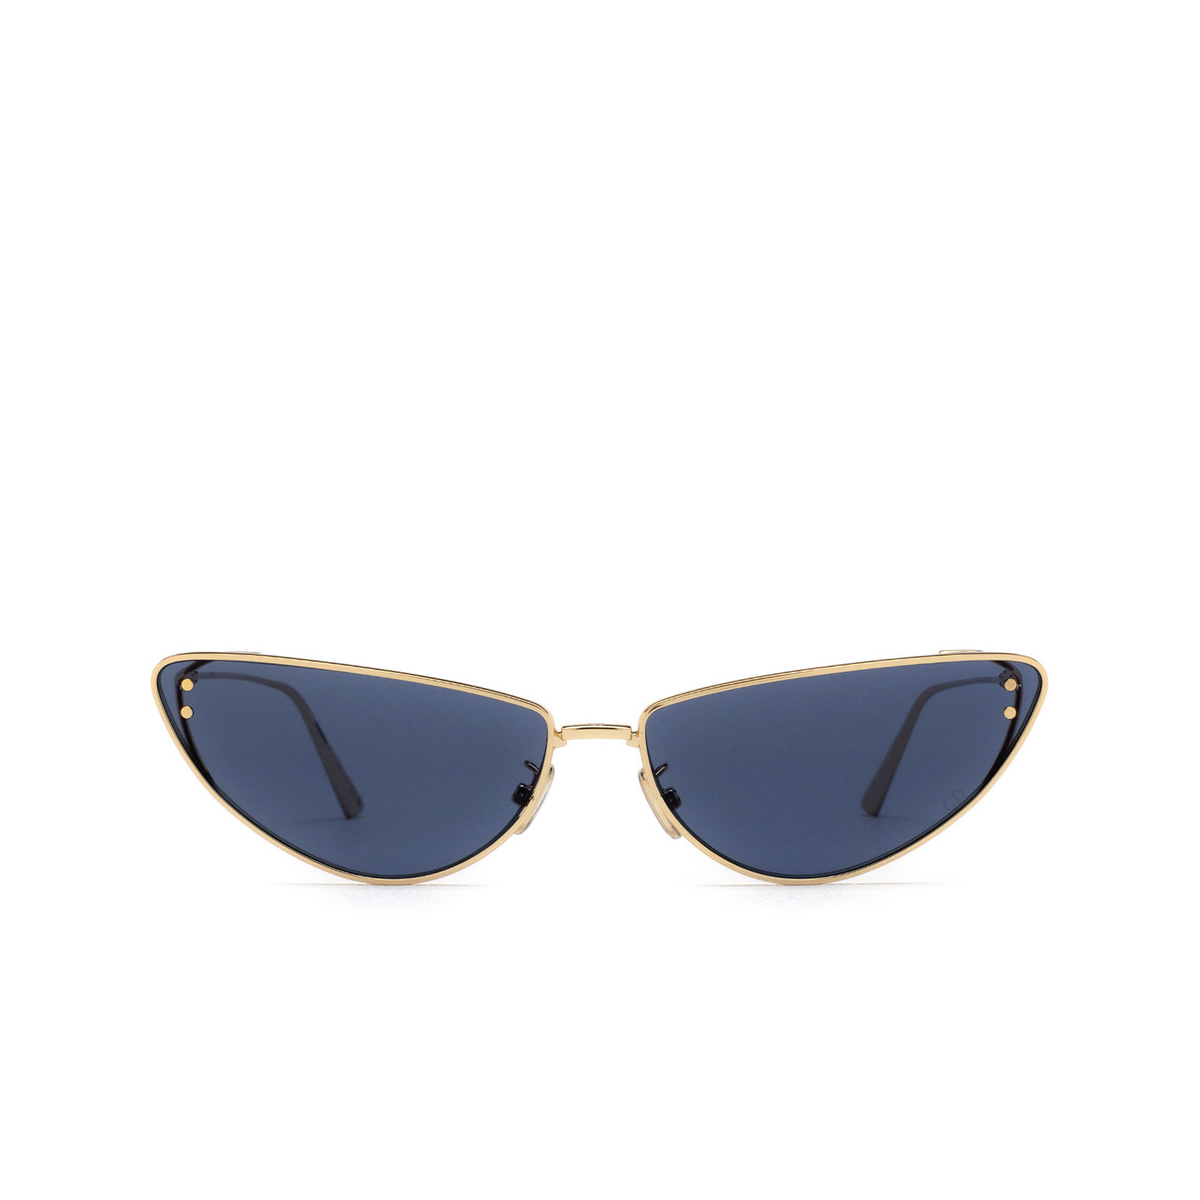 Sunglasses Dior MISSDIOR B1U - Mia Burton